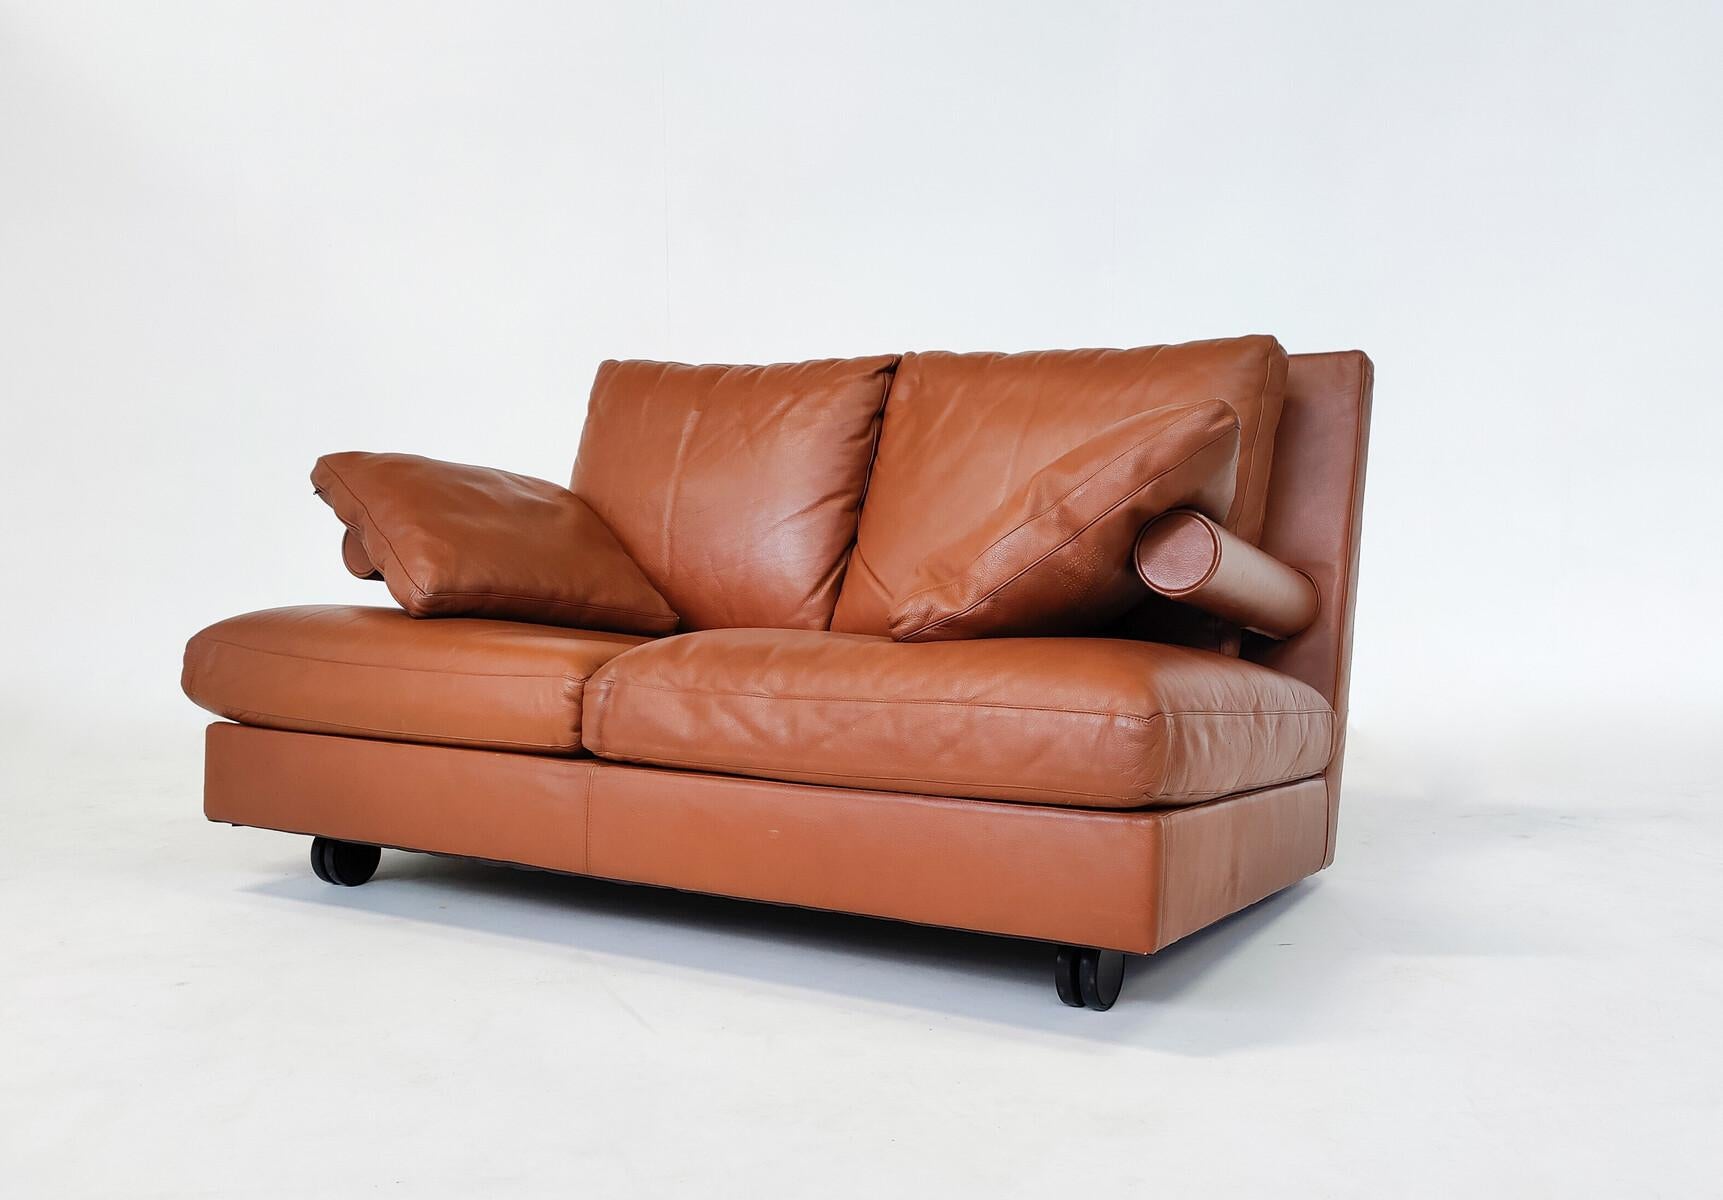 Modernes Baisity Zweisitzer-Sofa aus der Jahrhundertmitte von Antonio Citterio für B&B Italia, cognacfarbenes Leder, 1980er Jahre.